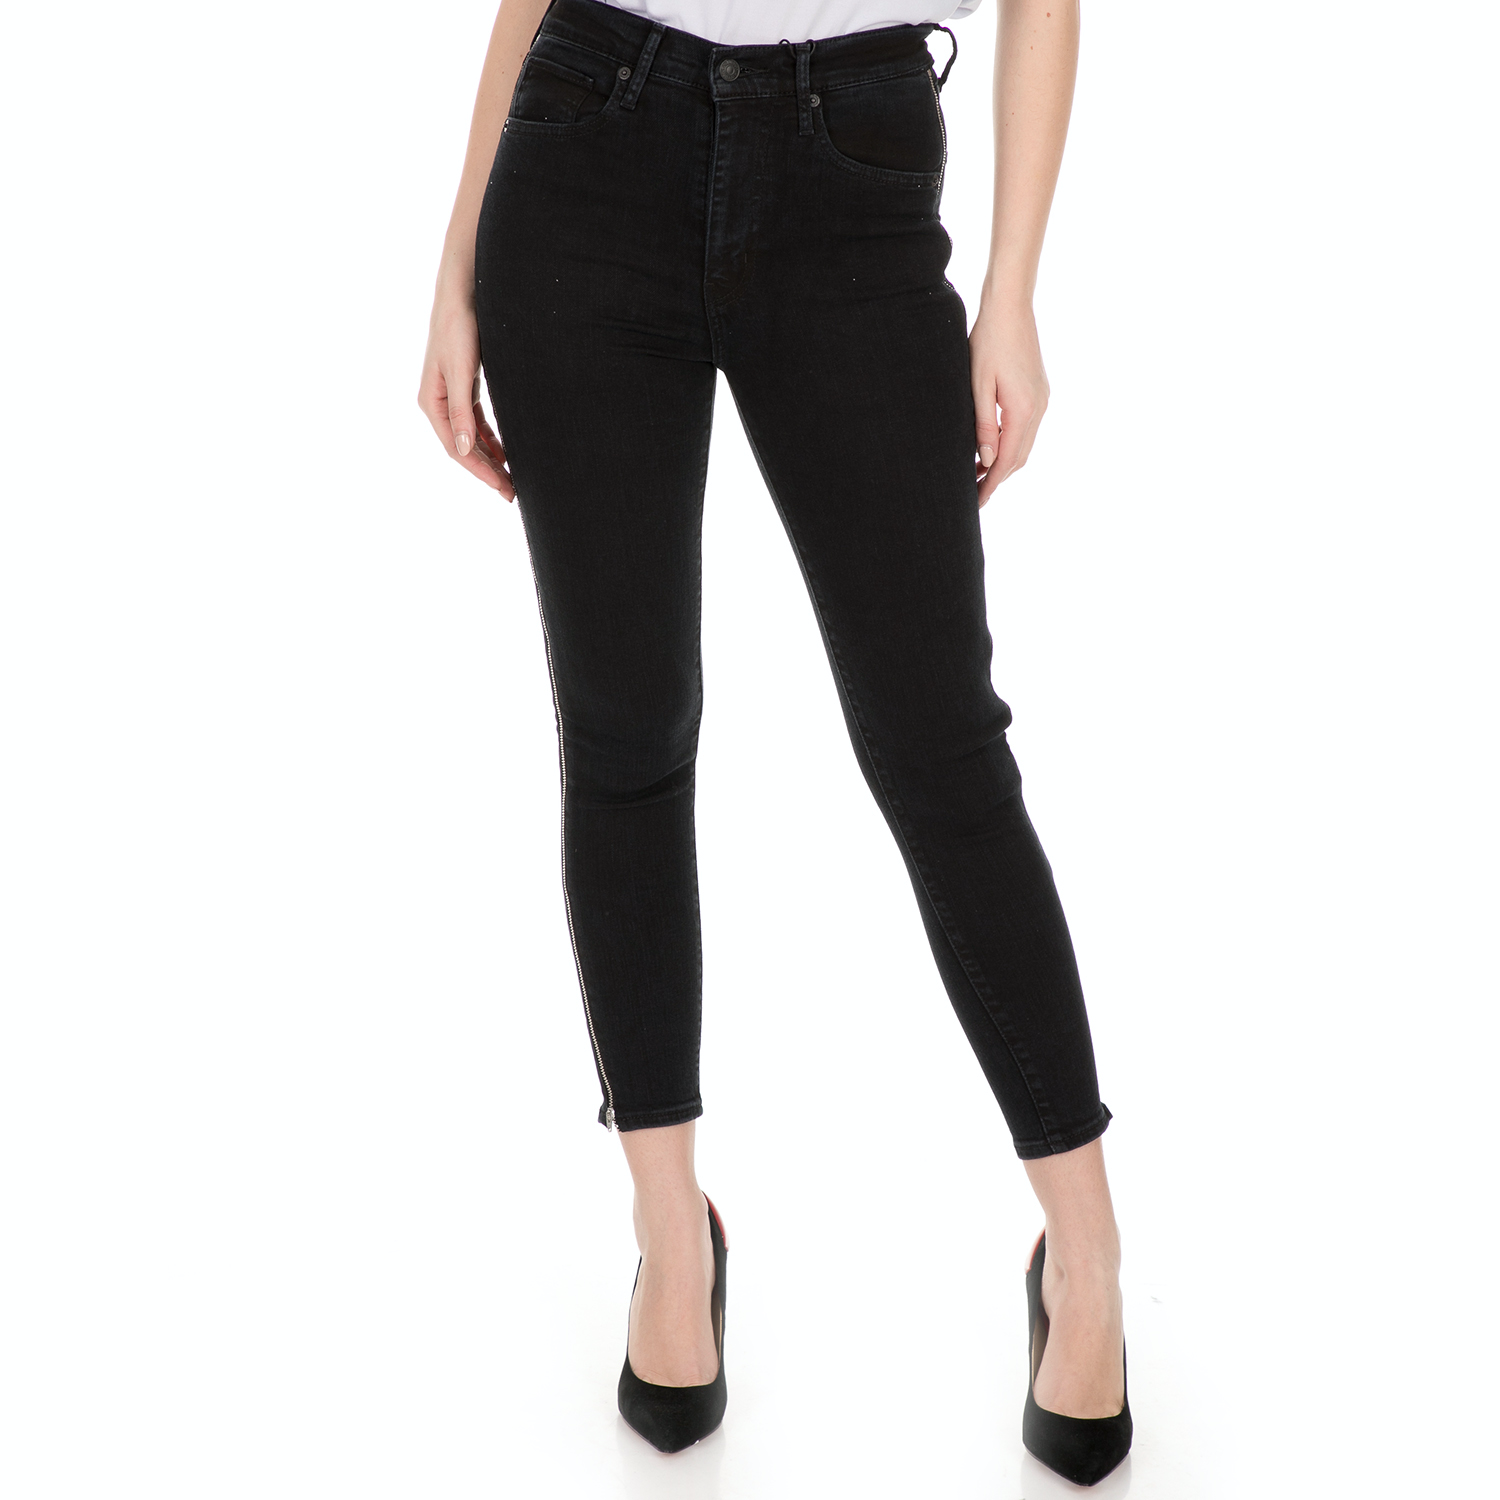 Γυναικεία/Ρούχα/Τζίν/Skinny LEVI'S - Γυναικείο jean παντελόνι LEVI'S MILE HIGH ANKLE ZIPPERS SURE μαύρο